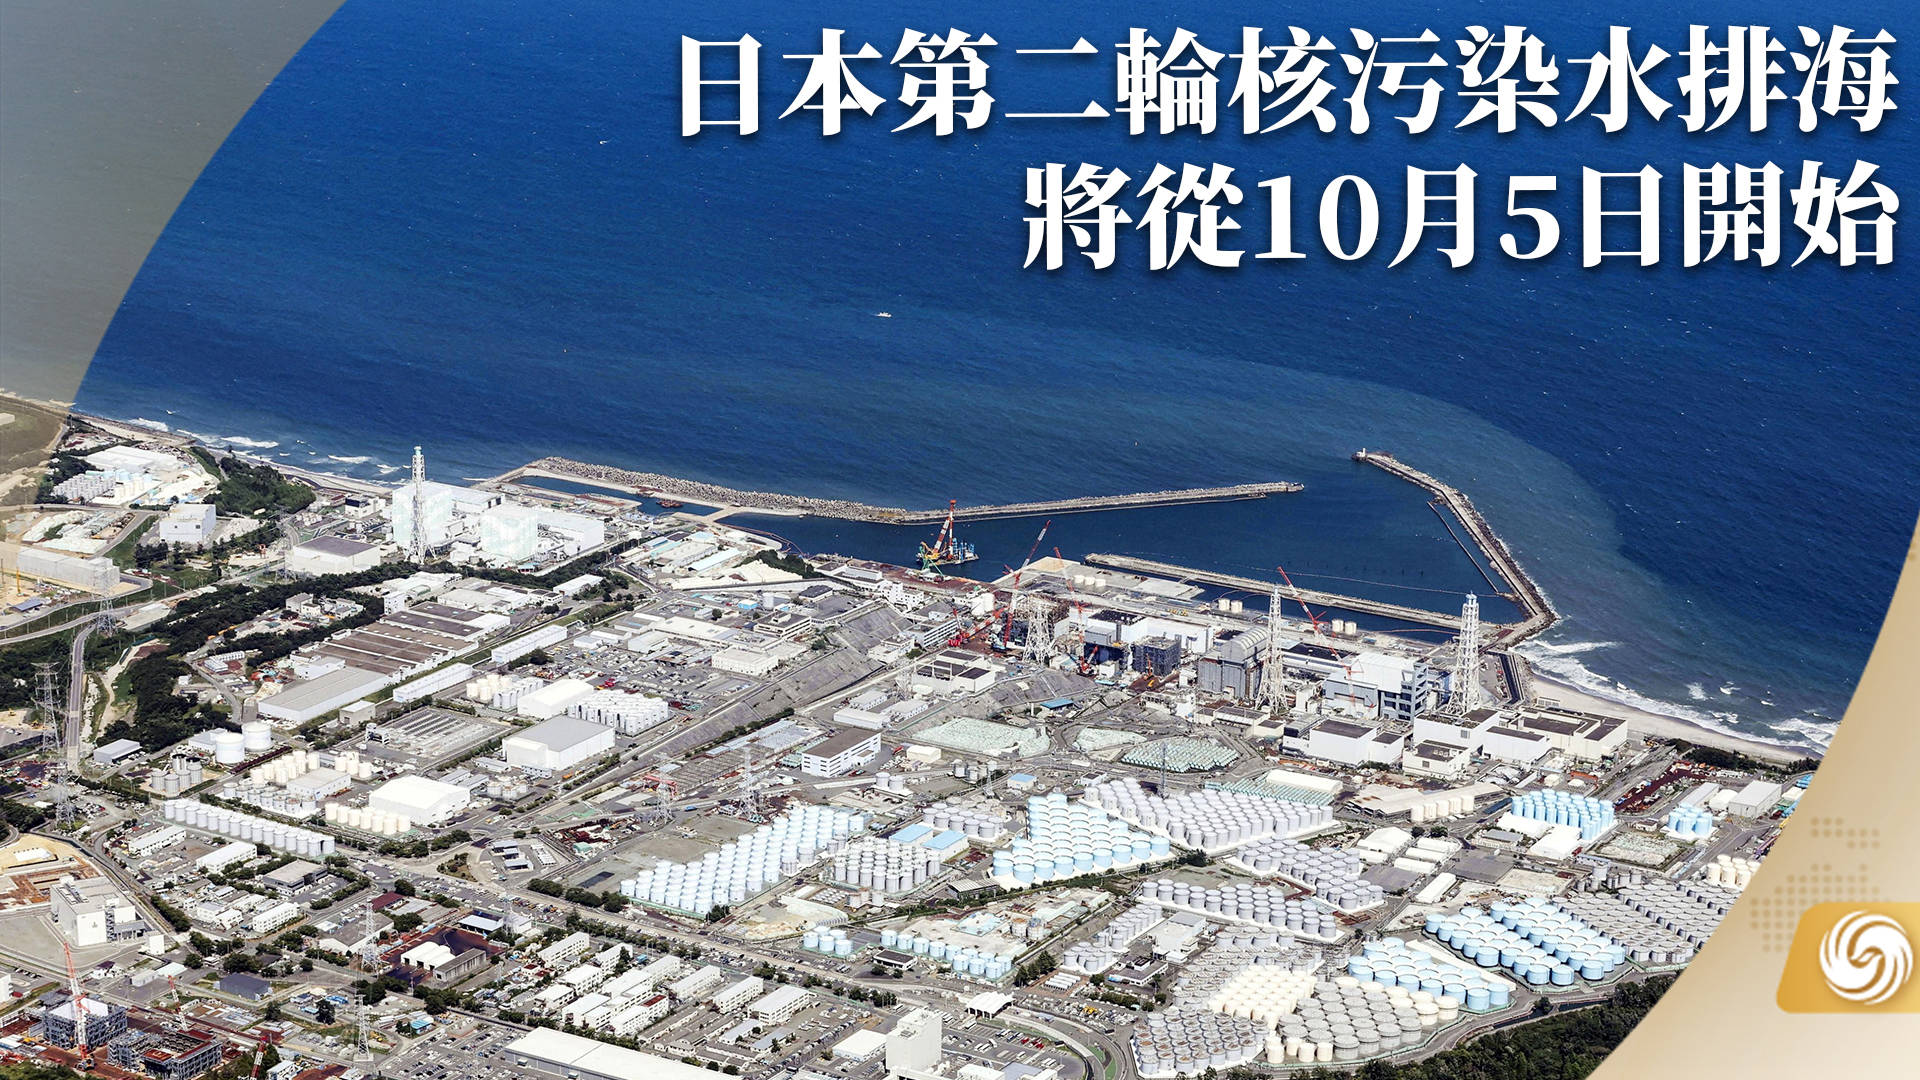 日本第二轮核污染水排海,将从10月5日开始,日本真能独善其身吗